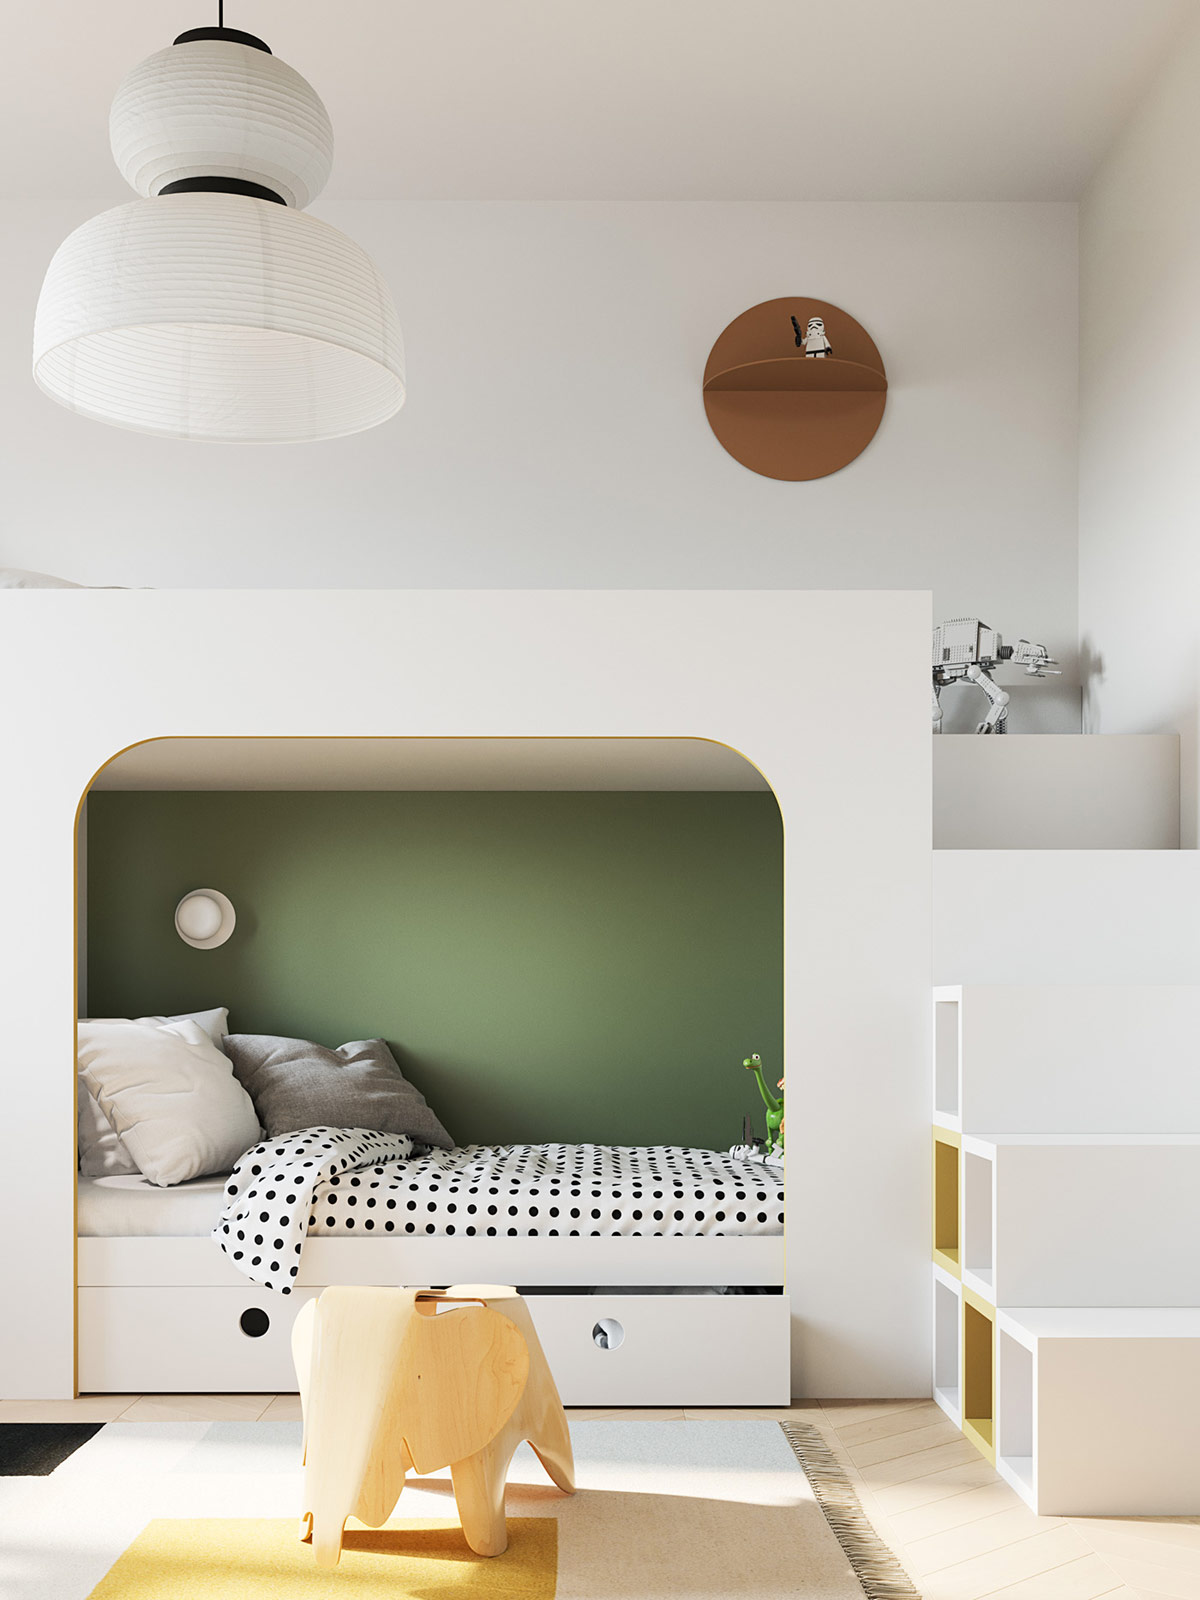 Họa tiết cửa hình vòm cũng được ứng dụng trong thiết kế giường trẻ em. Sắc xanh lá giúp gia tăng chiều sâu cho không gian phòng.